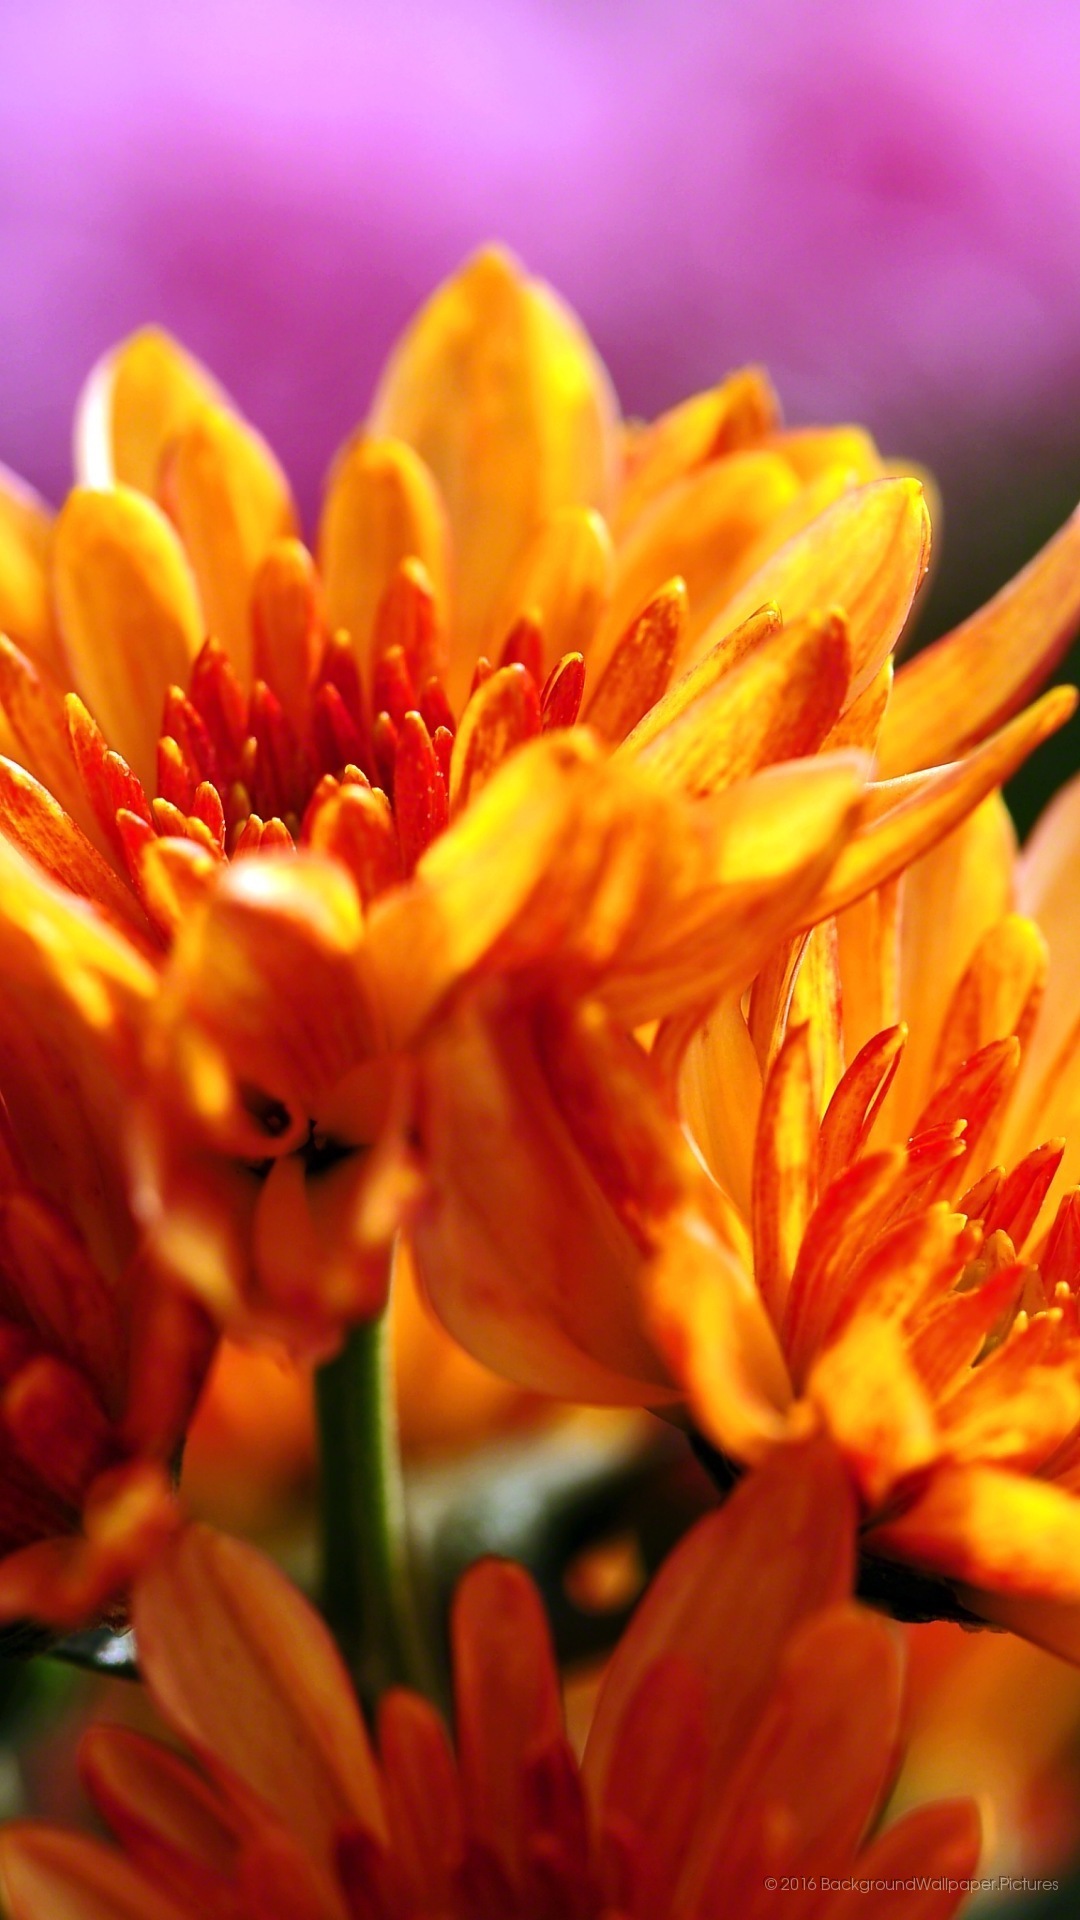 fond d'écran mobile lyf hd,fleur,plante à fleurs,pétale,orange,jaune